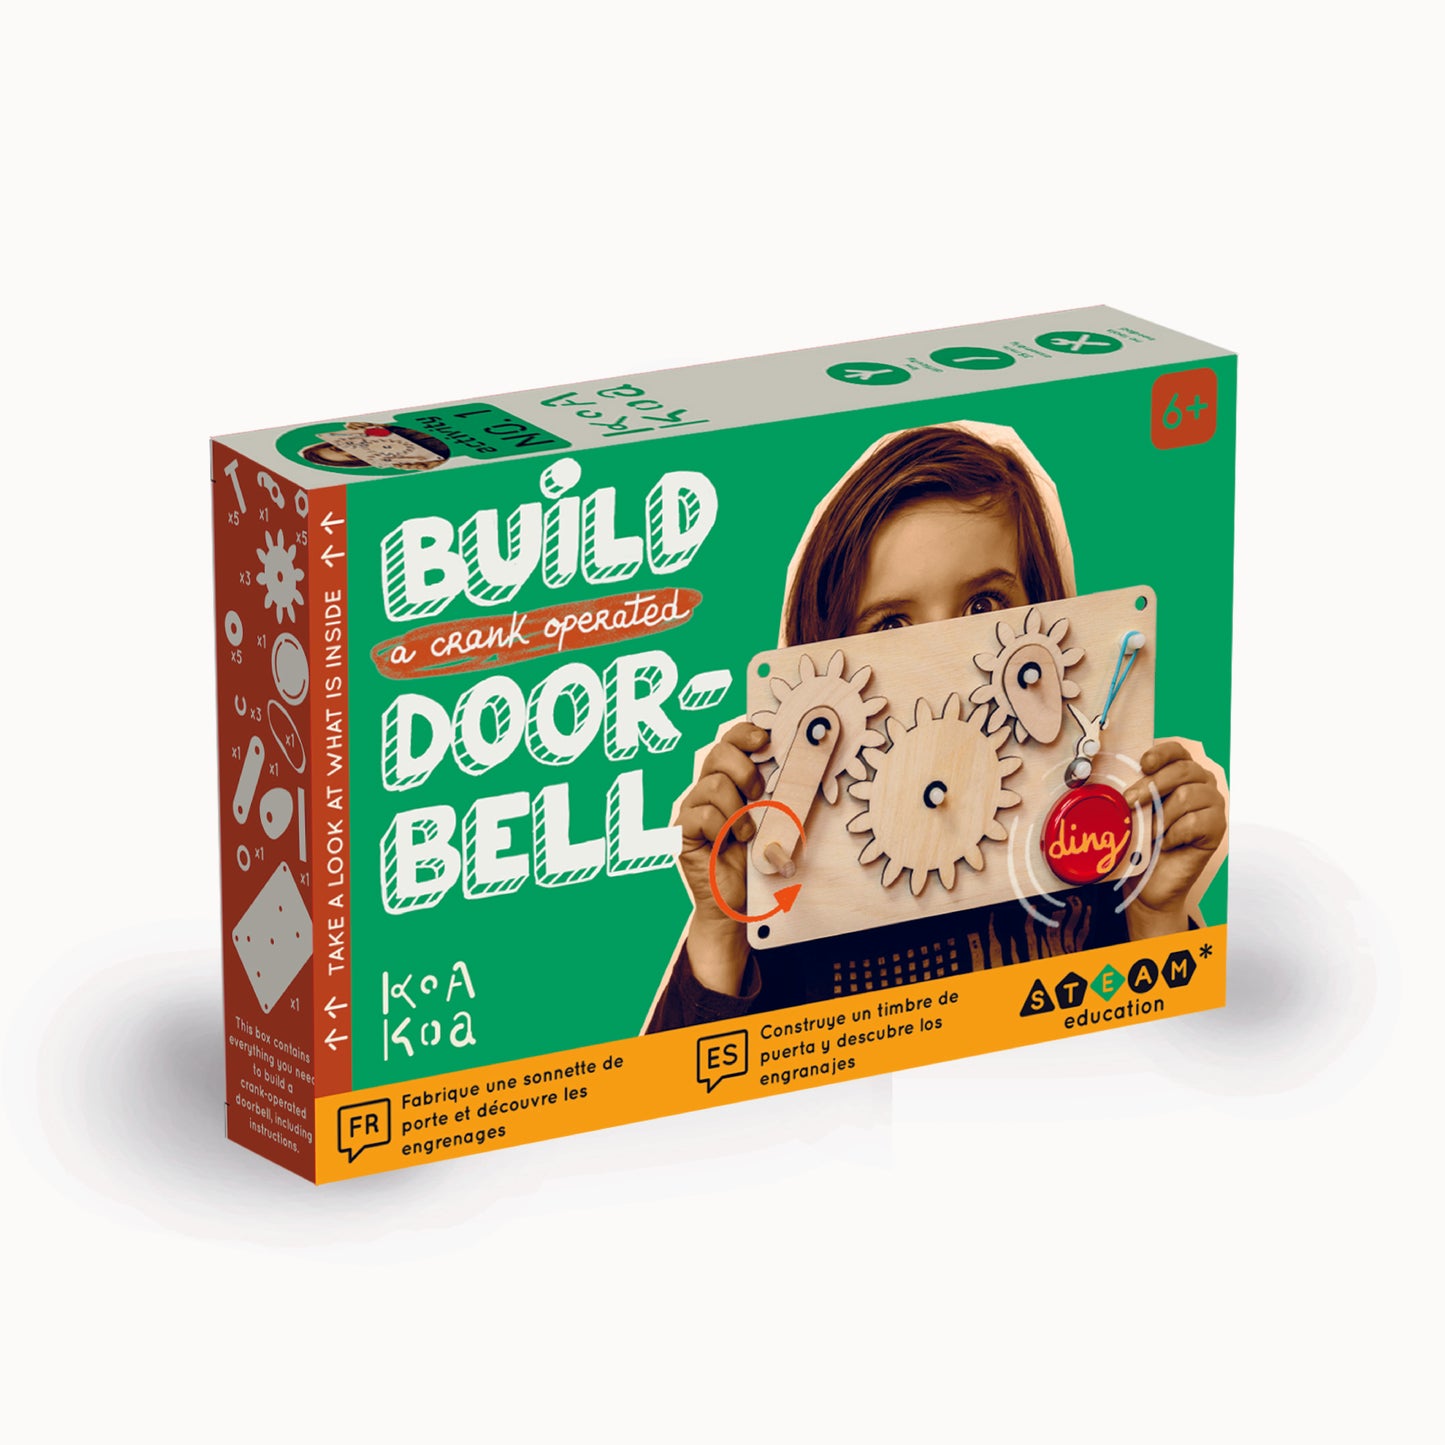 Build your own doorbell for children, from Koa Koa, France